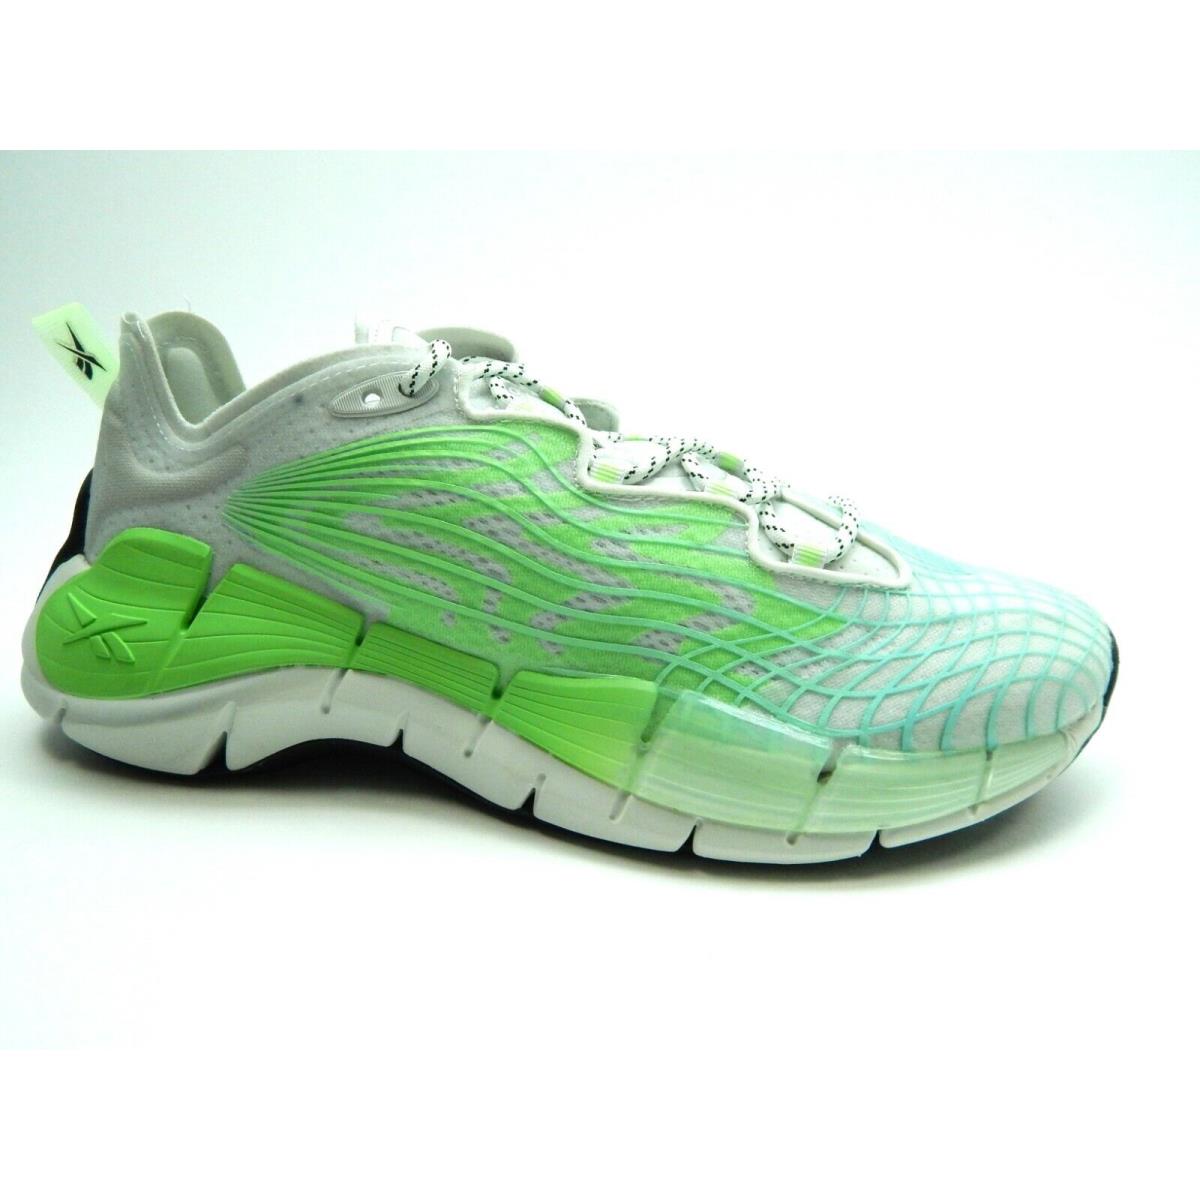 Reebok Zig Kinetica II Neon Mint True Grey Running Women Shoes FX9406